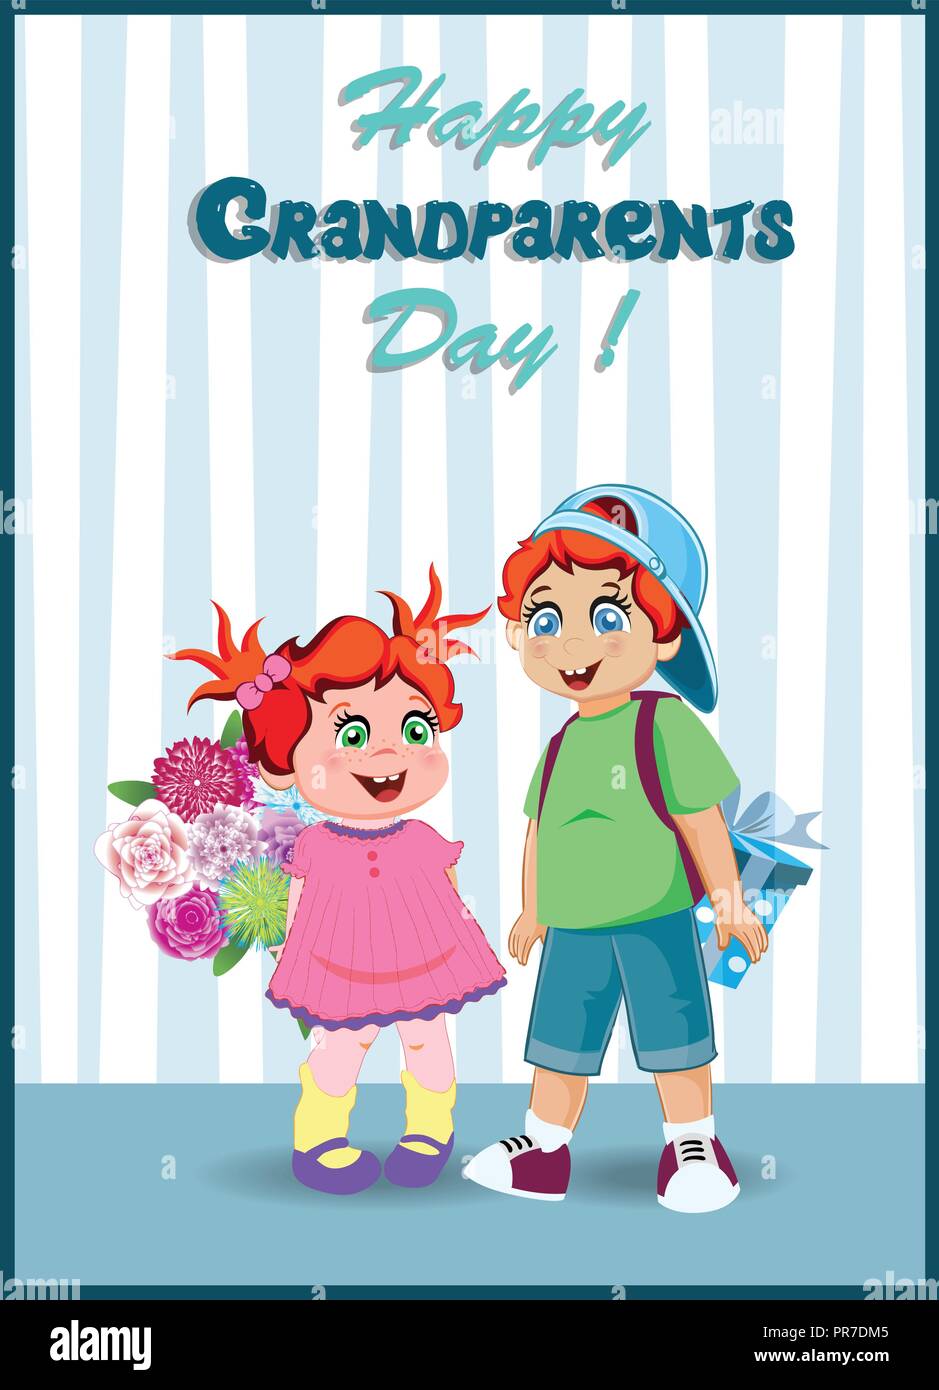 Glückliche Großeltern-Tag Grußkarte. Cartoon Vector Illustration der Enkelin und Enkel mit Blumen und Geschenk für Oma und gra Stock Vektor